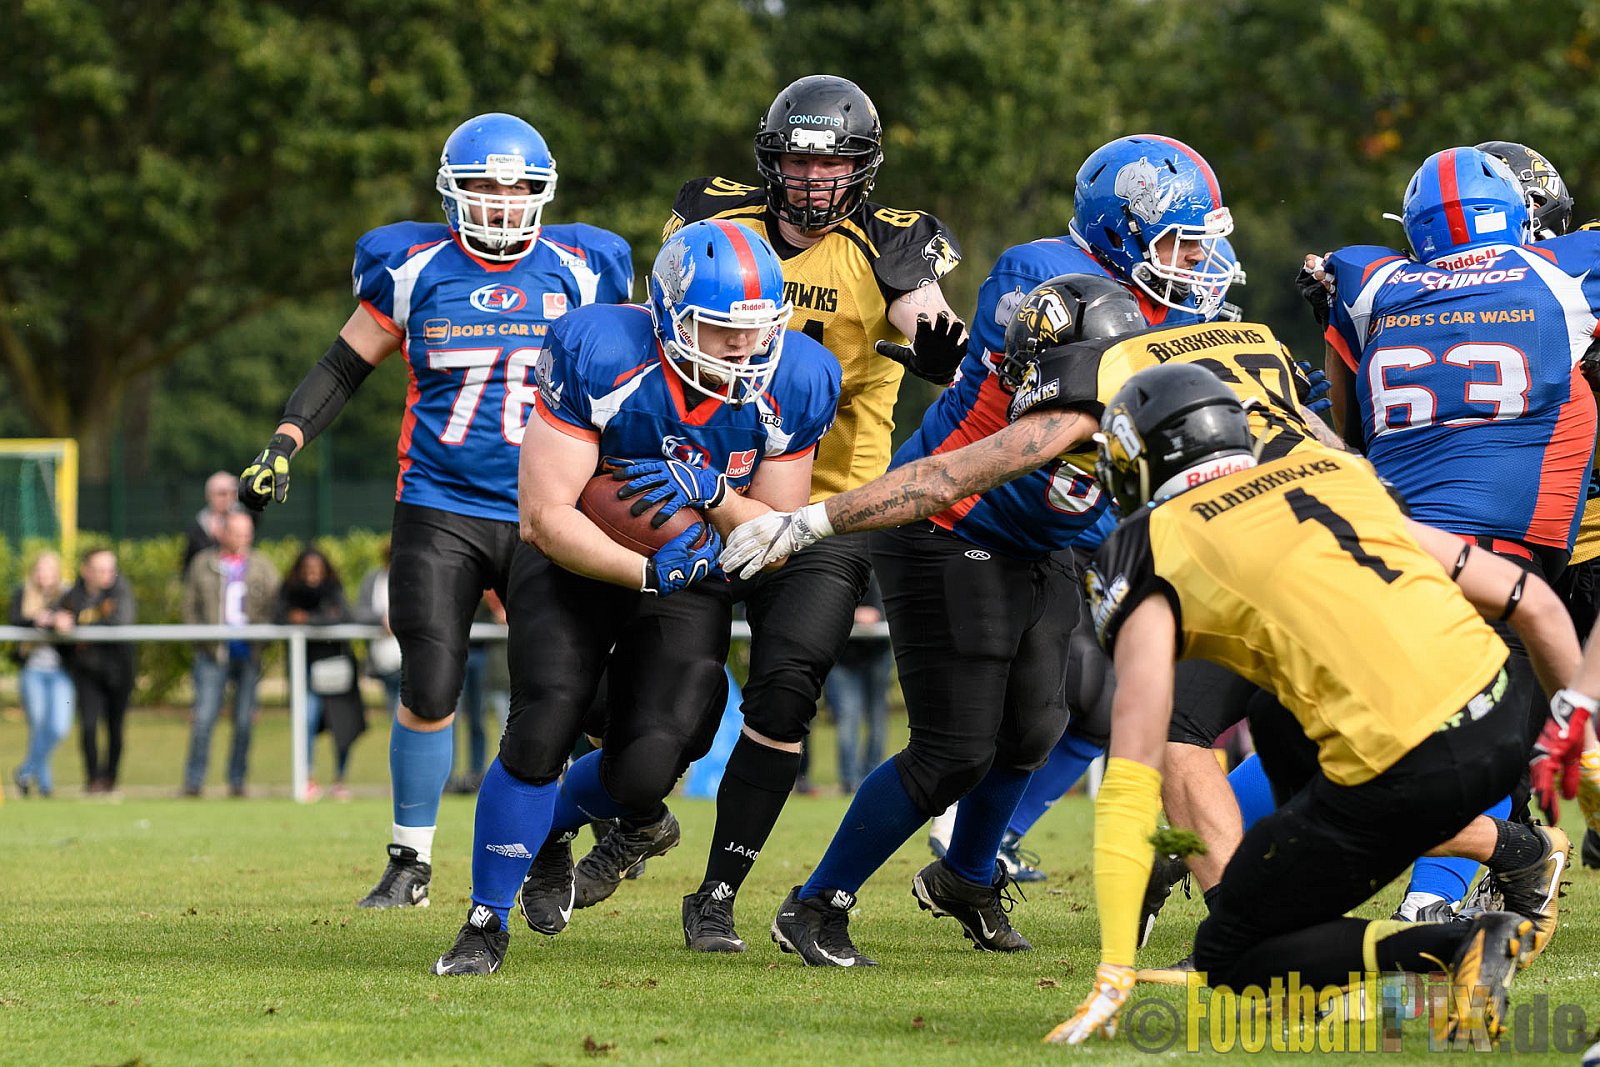 Bocholt Rhinos vs. Münster Blackhawks - 09.10.2016 VL NRW: Bocholt Rhinos vs. Münster Blackhawks (0:41)